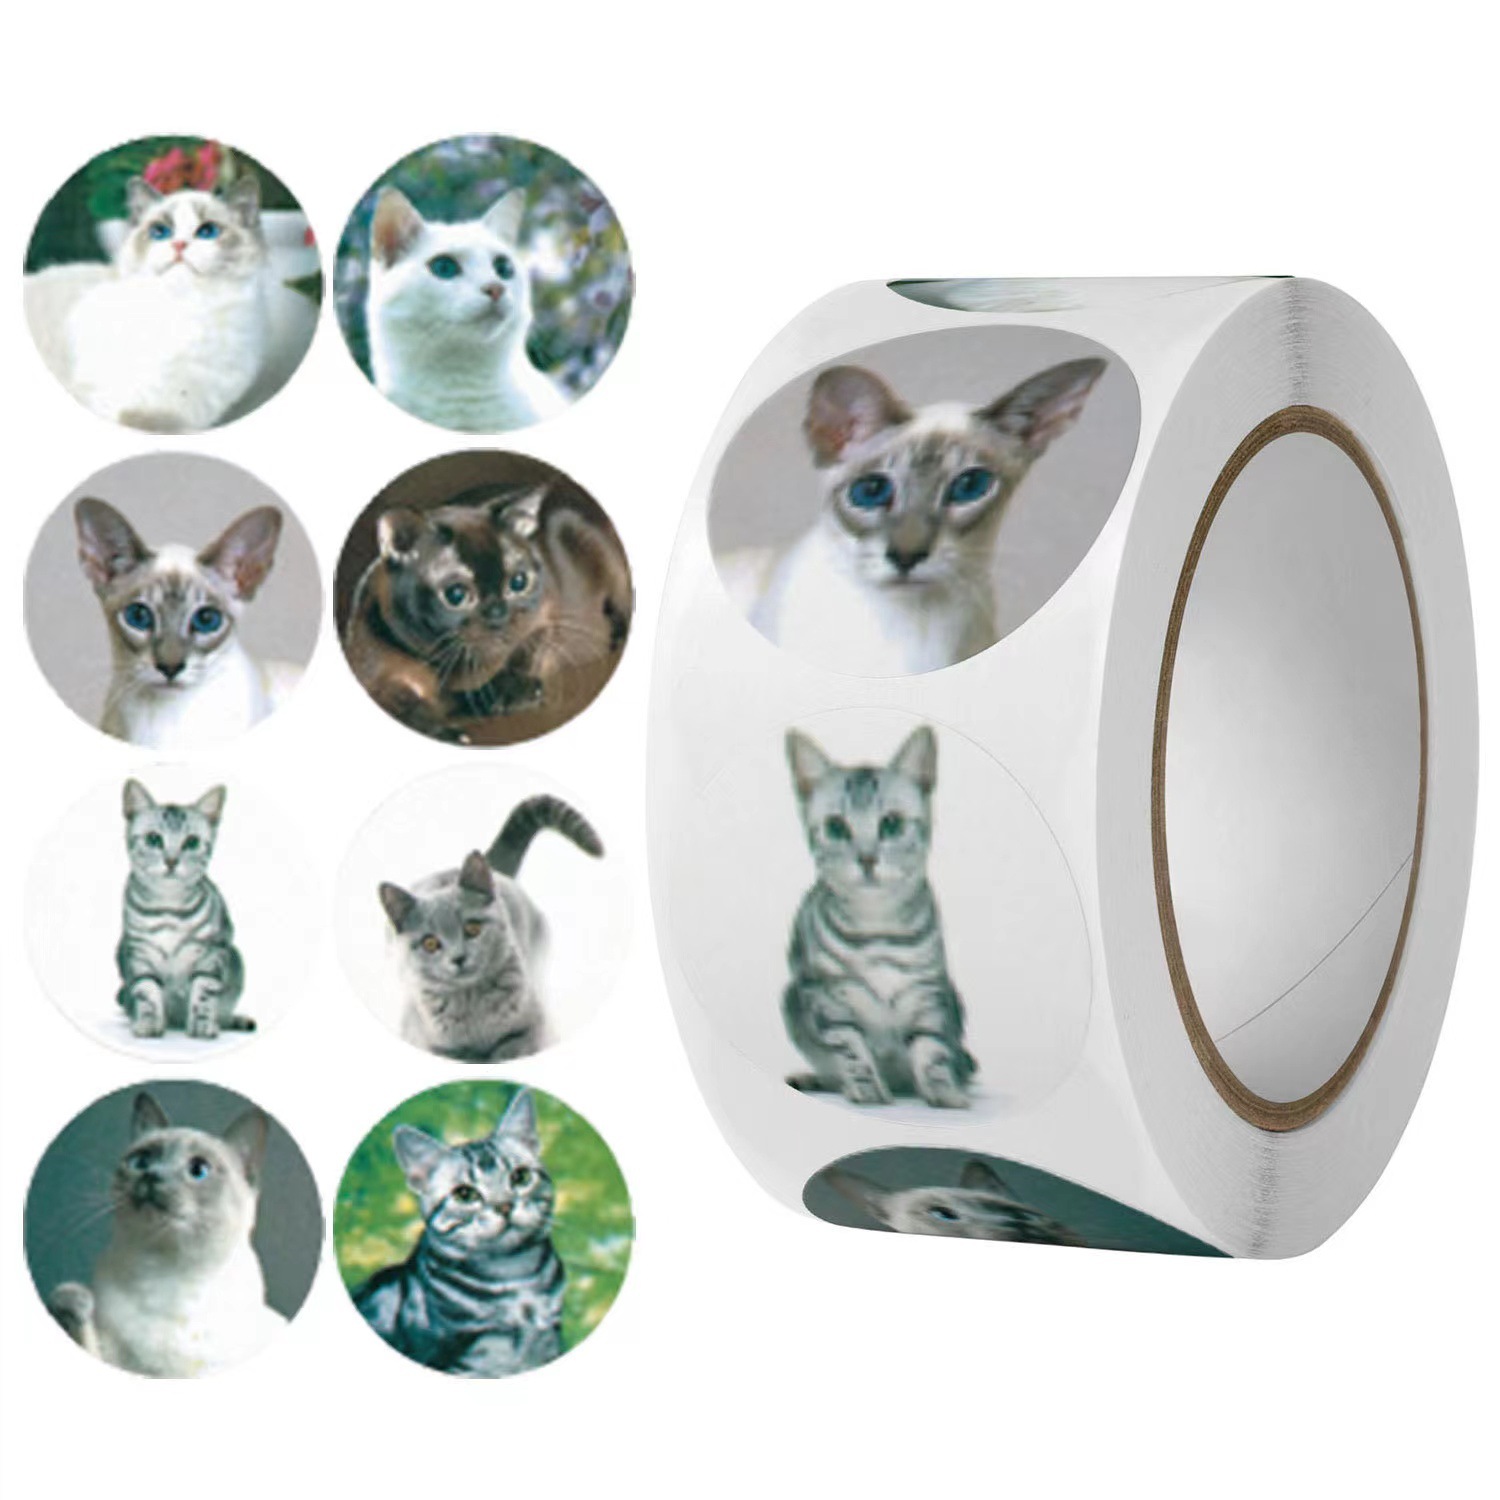 OEM Kilang Langsung 500 keping Roll Pelekat Kotak Penghantaran Kucing Comel 1 Inci untuk Perniagaan